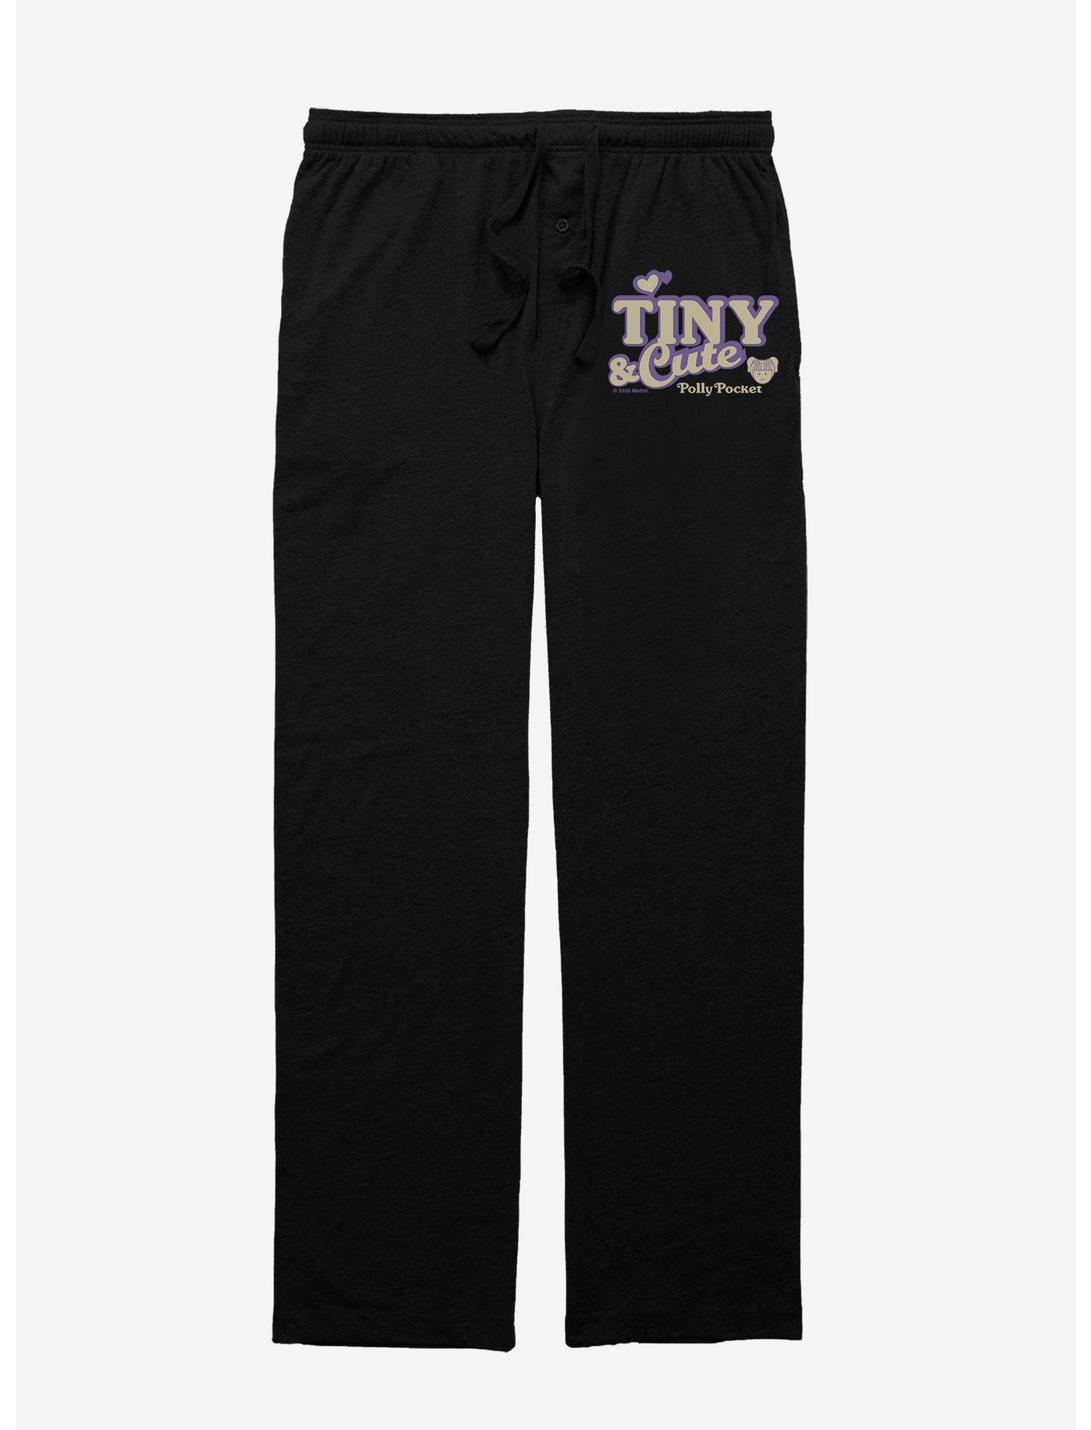 Polly Pocket Cutie Pajama Pants, BLACK, hi-res